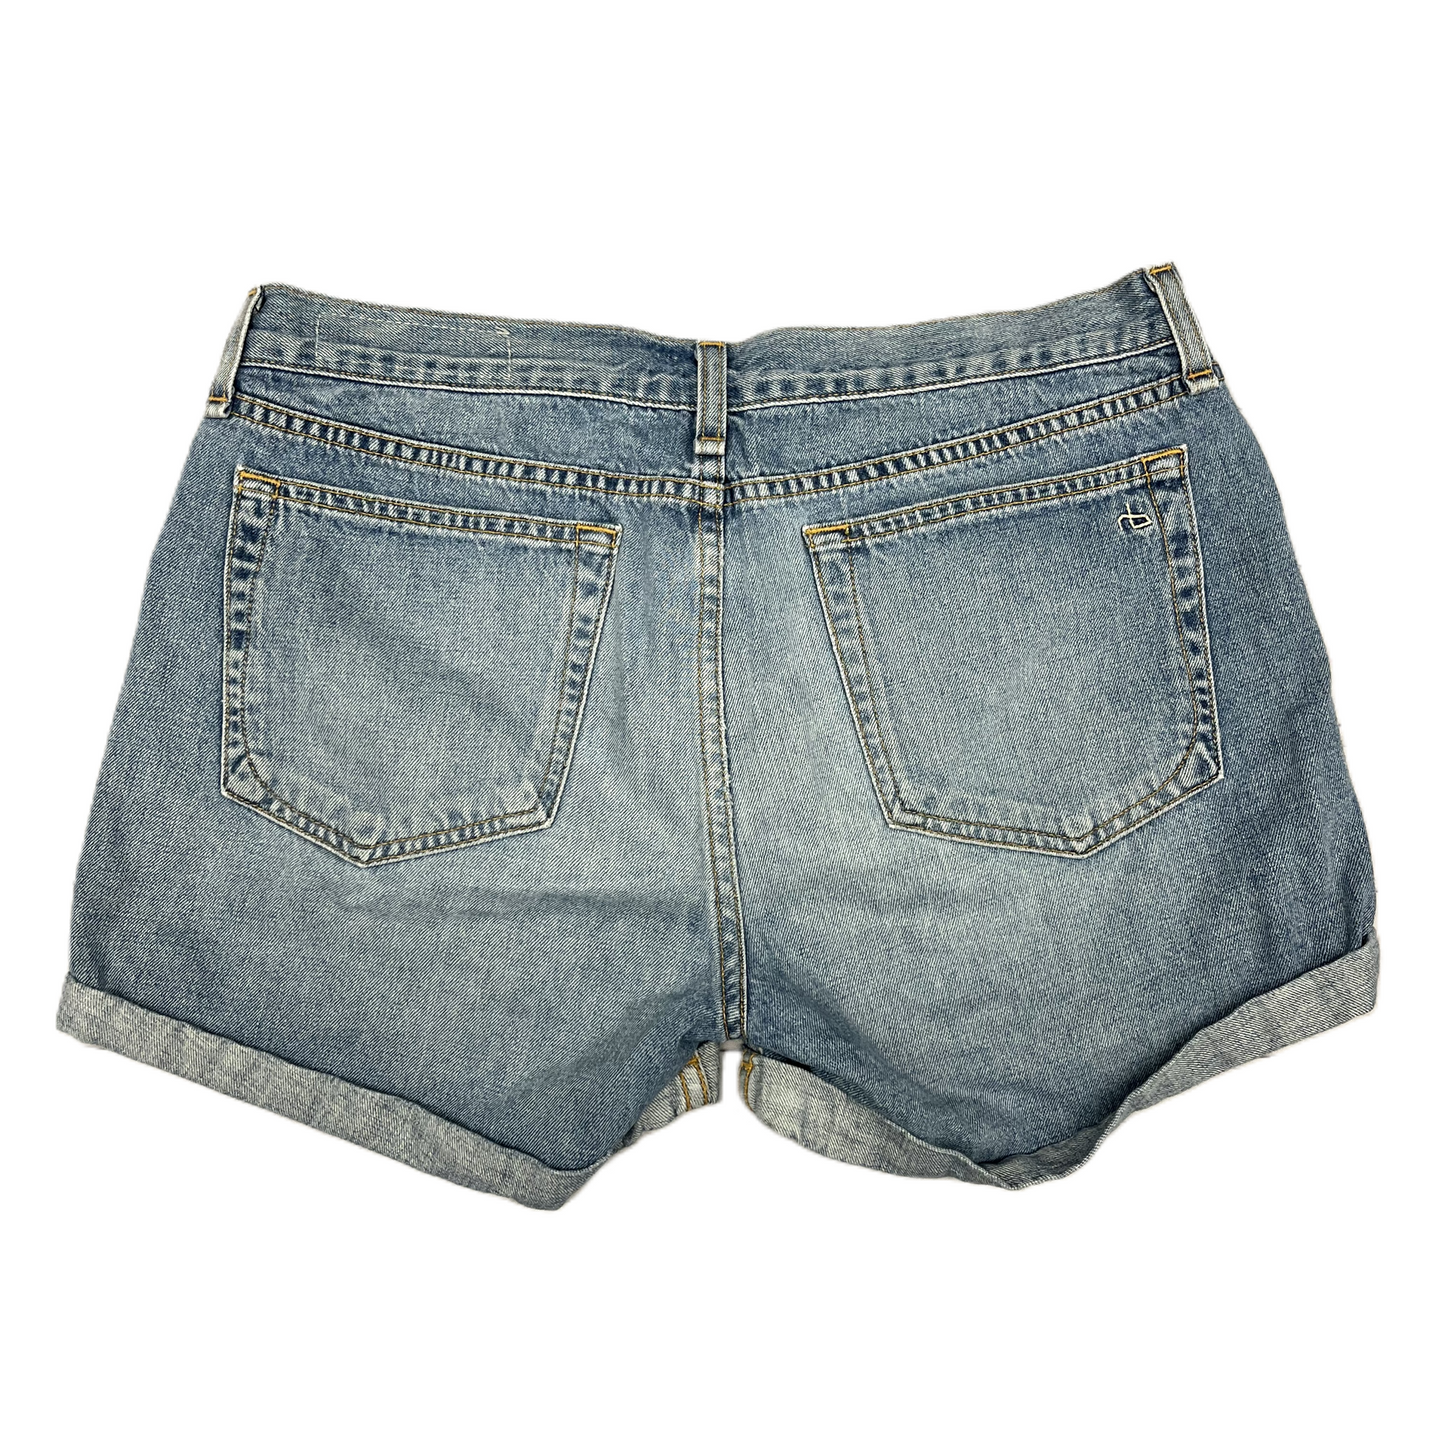 Blue Denim Shorts Designer By Rag & Bones Jeans, Size: 4